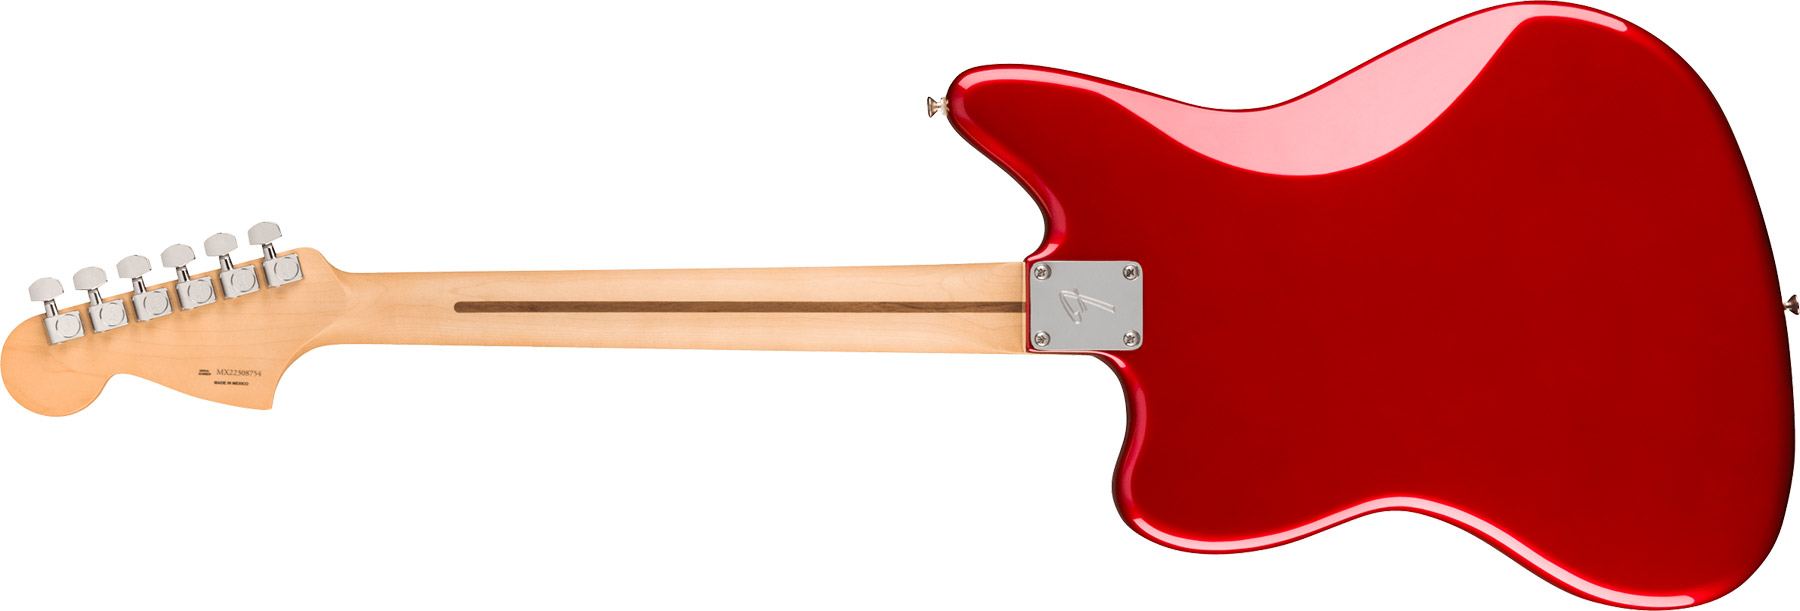 Fender Jaguar Player Mex 2023 Hs Trem Pf - Candy Apple Red - Retro-Rock-E-Gitarre - Variation 1